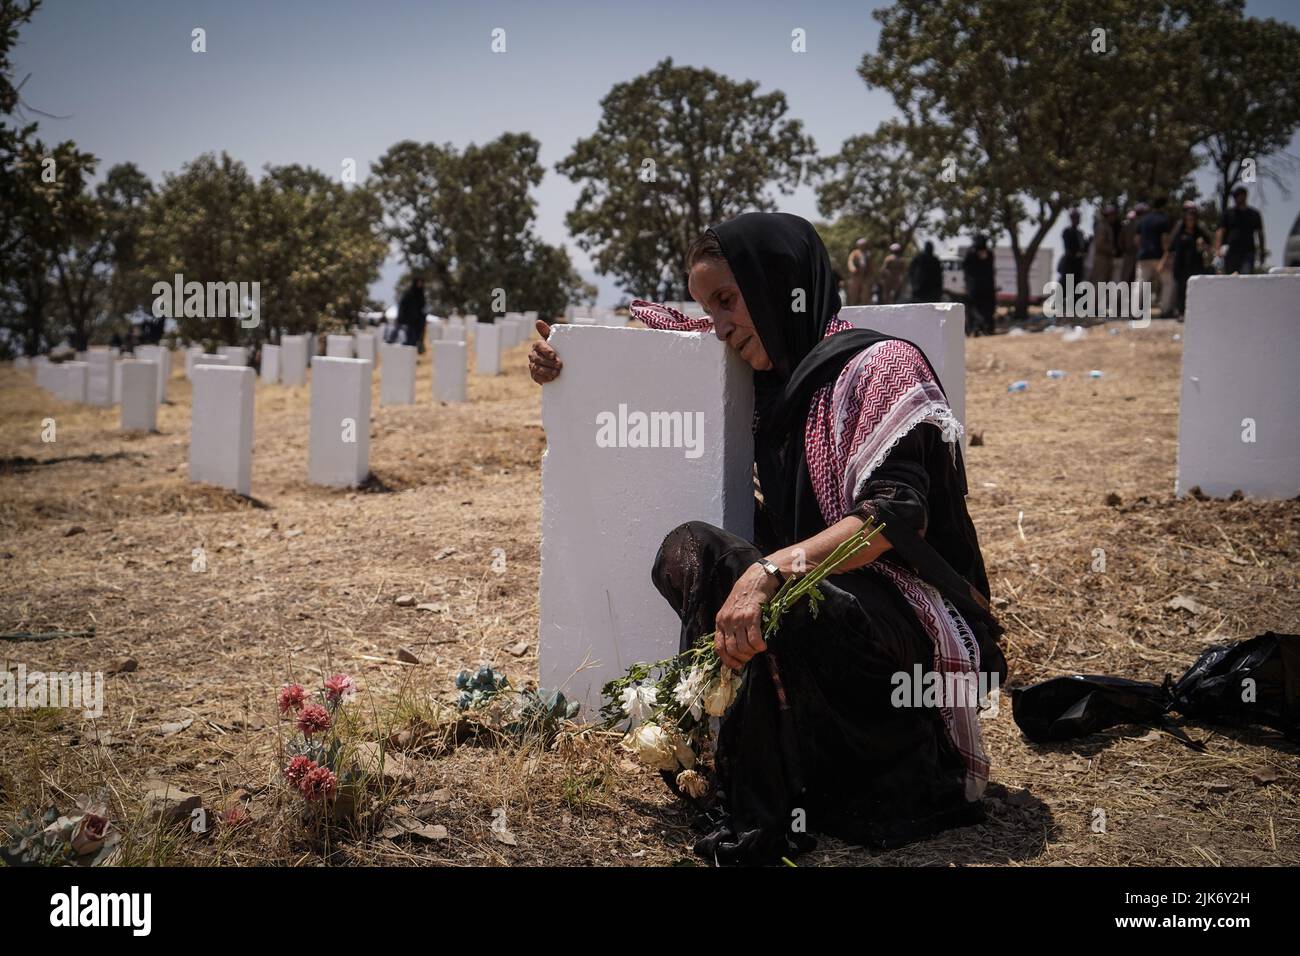 Barzan, Irak. 31.. Juli 2022. Eine ältere kurdische Frau trauert am Grab auf dem Anfal-Friedhof, nachdem die Überreste von 100 Barzani-Opfern begraben wurden, die Ende 1980s bei den Anfal-Operationen getötet wurden. Das Regime des baathistischen Irak unter Führung von Saddam Hussein hat Ende 1980s gewalttätige Operationen gegen die Kurden durchgeführt, bei denen mindestens 182.000 Tote und 90 % der kurdischen Dörfer zerstört wurden. Quelle: Ismael Adnan/dpa/Alamy Live News Stockfoto